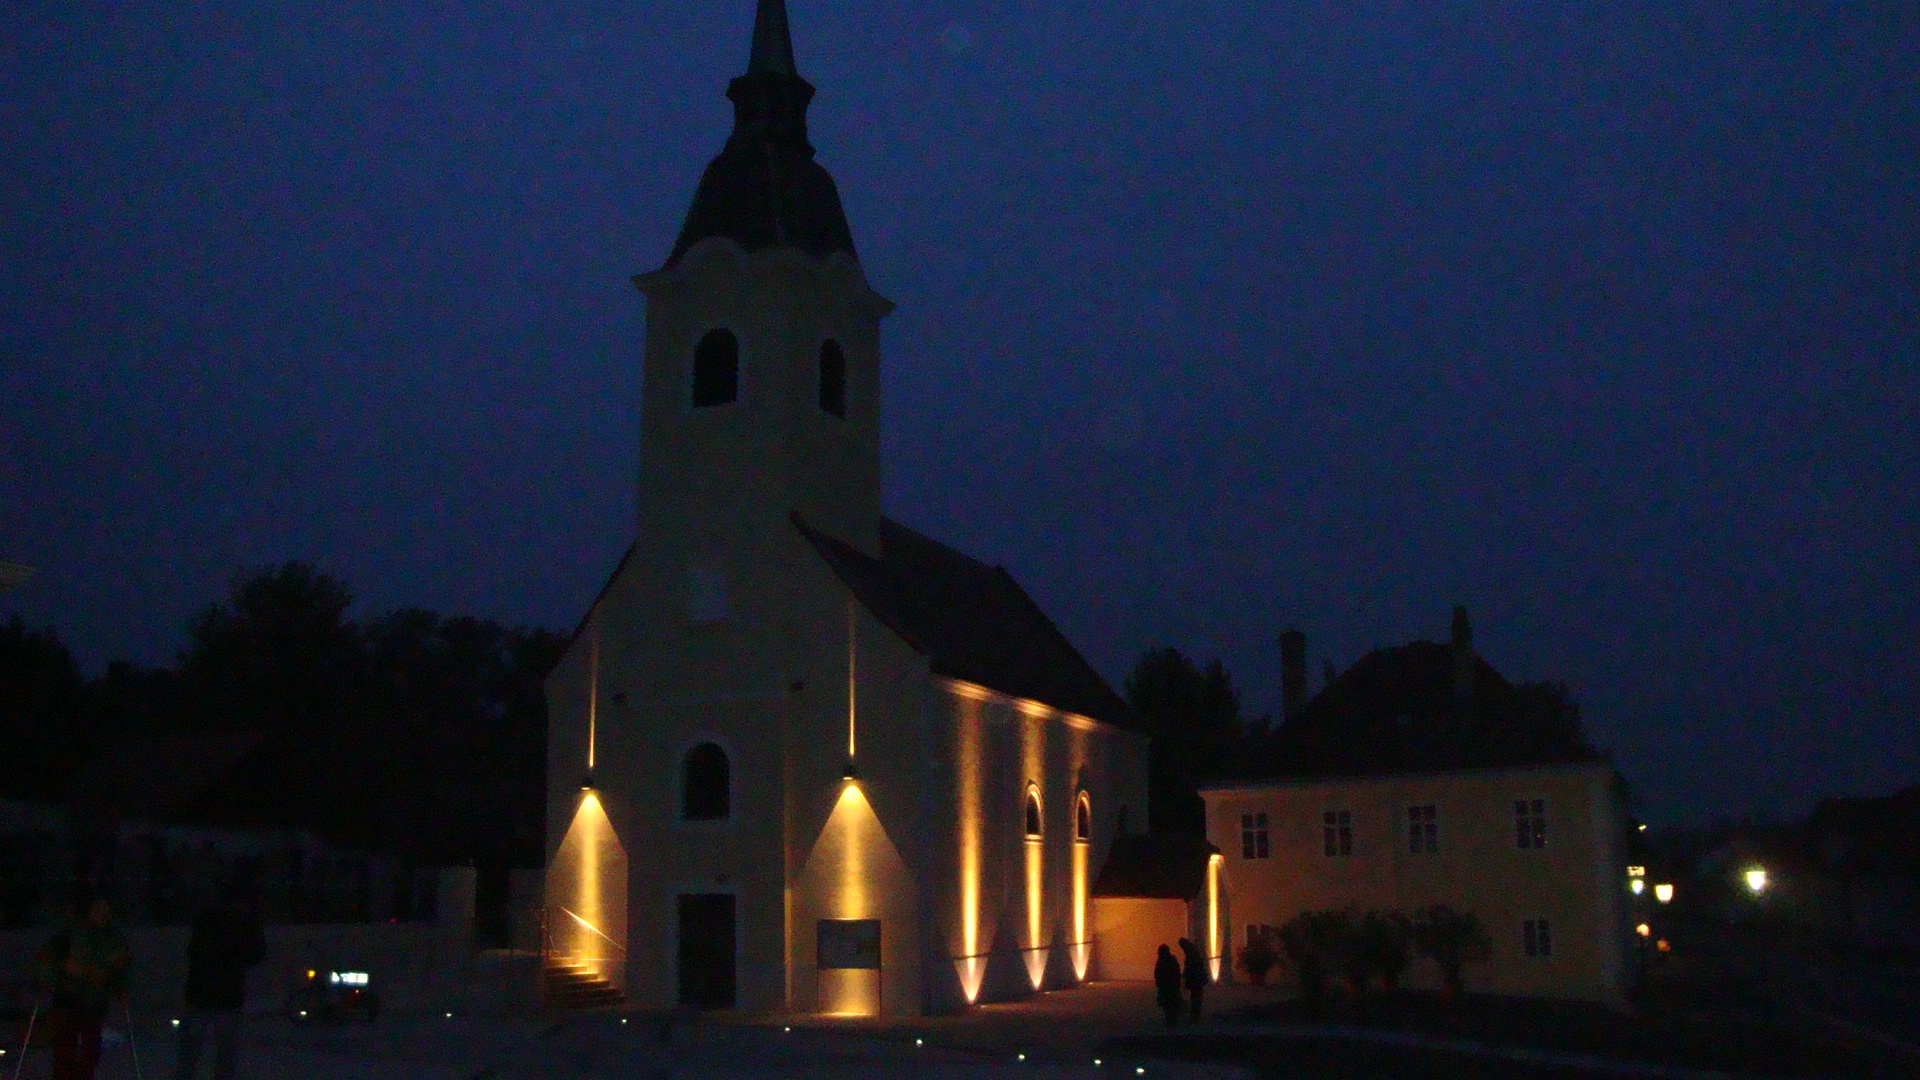 Kirche bei Nacht.JPG - 6840720.1